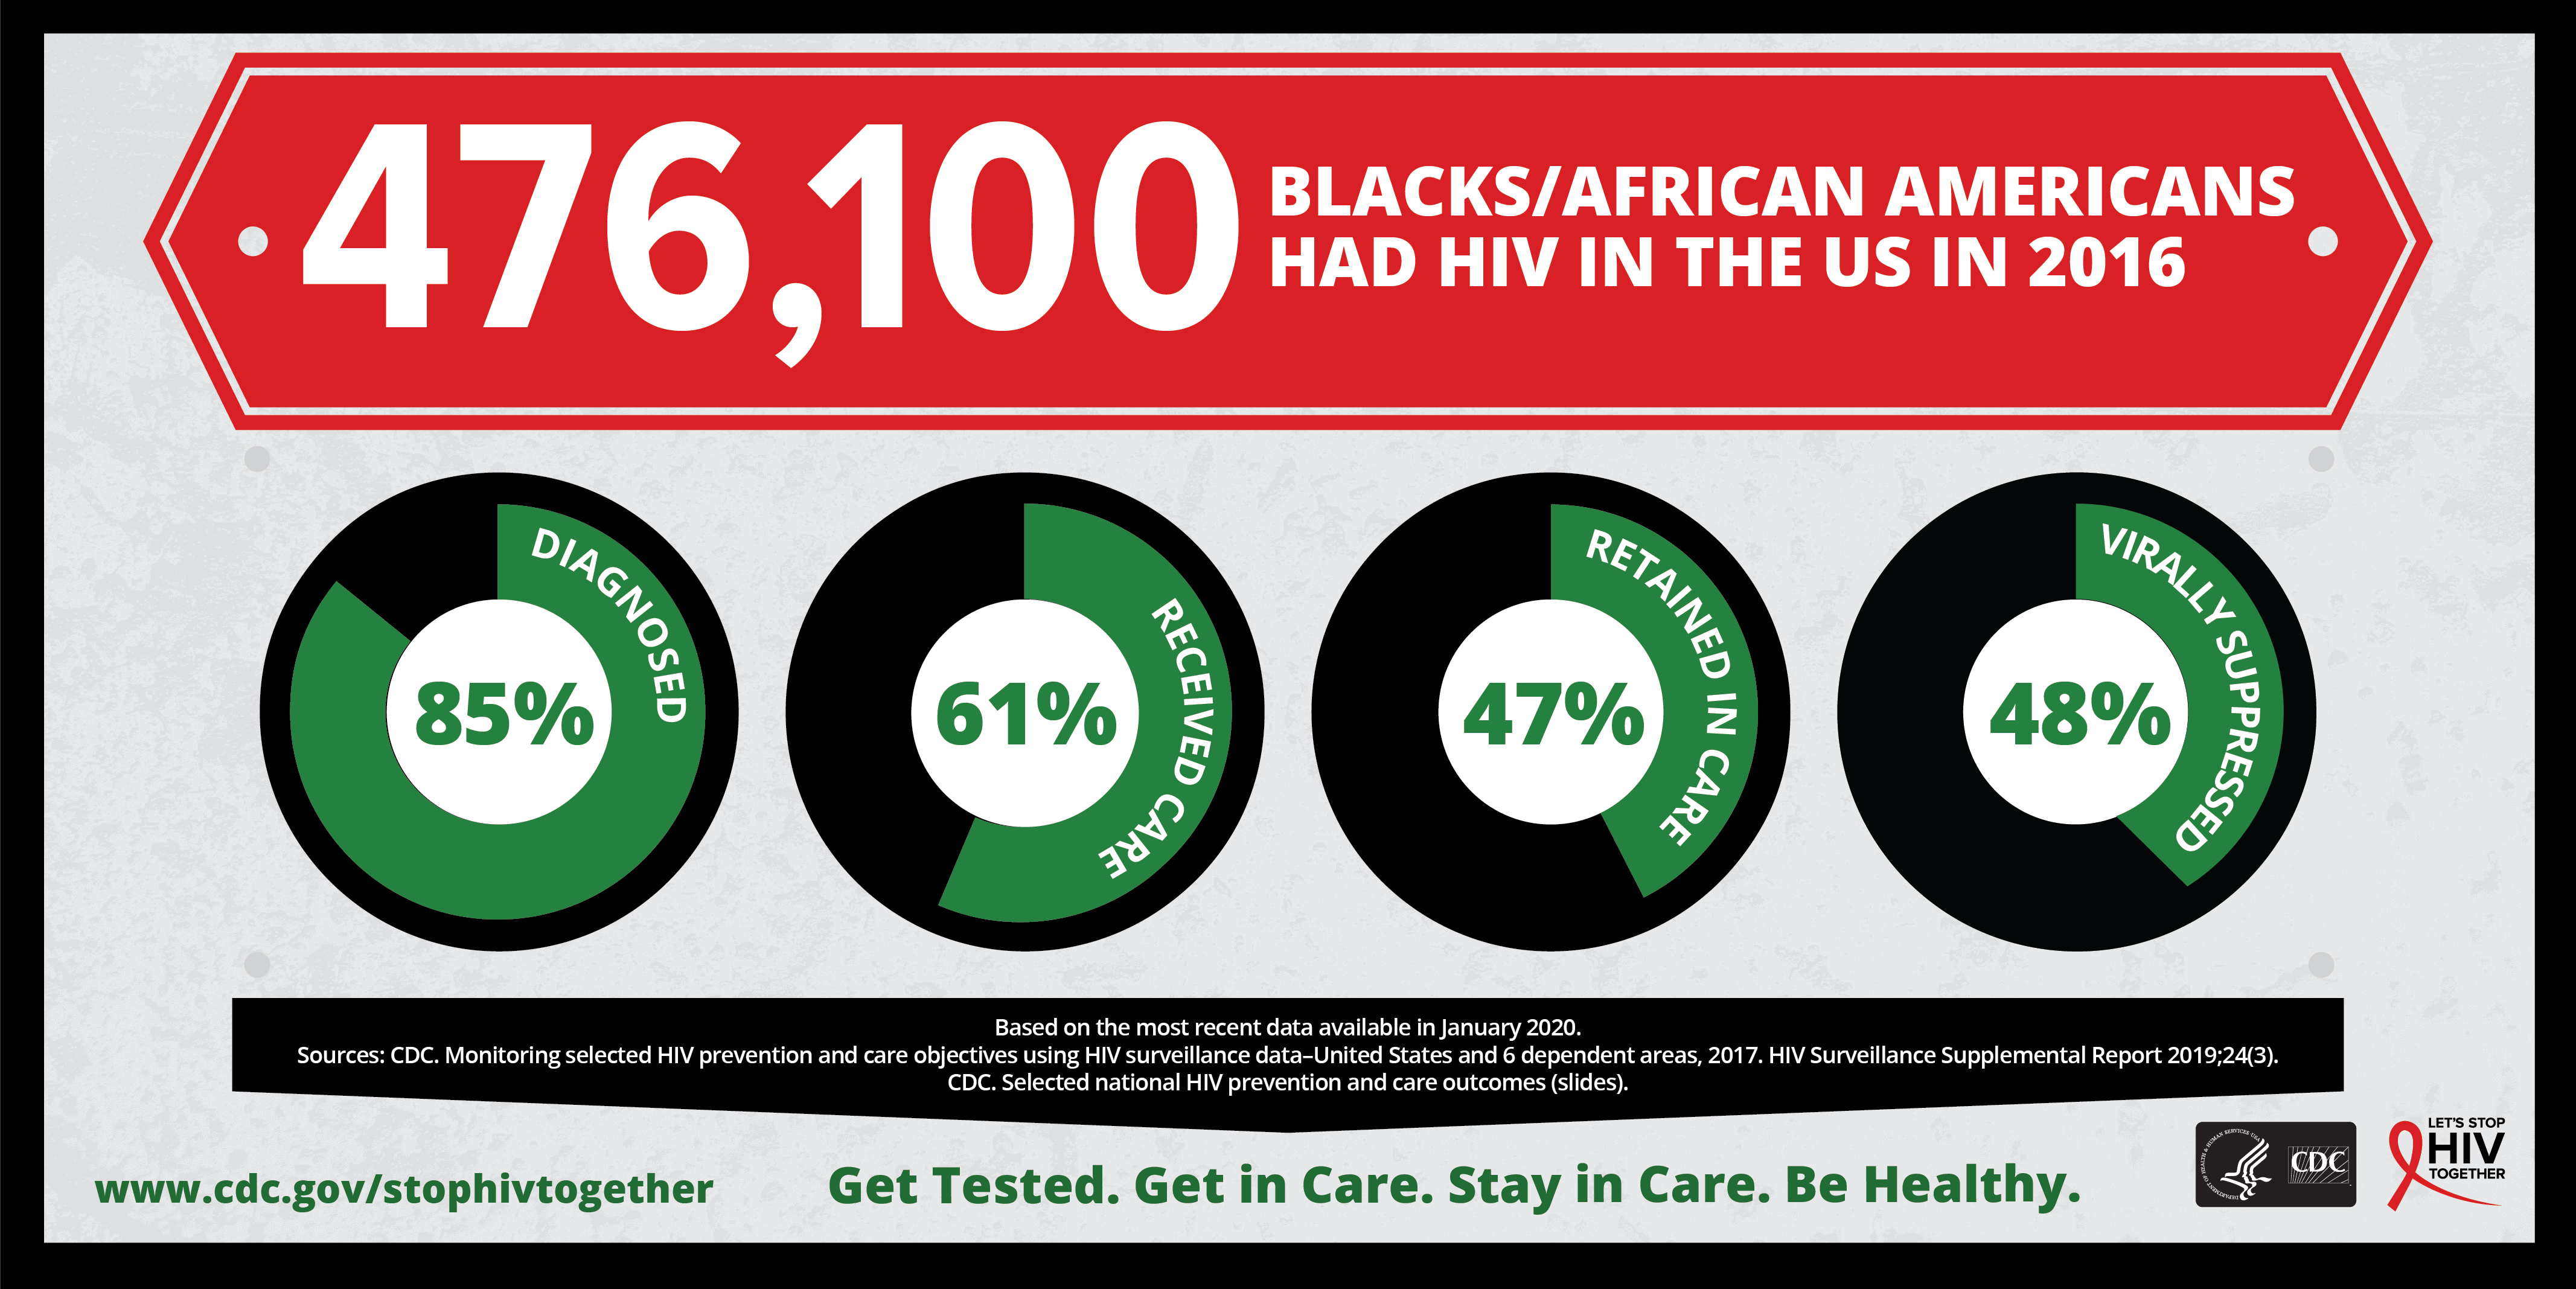 Химия спид ап. HIV CDC. National Black HIV/AIDS Awareness Day. National Blackjack Day.